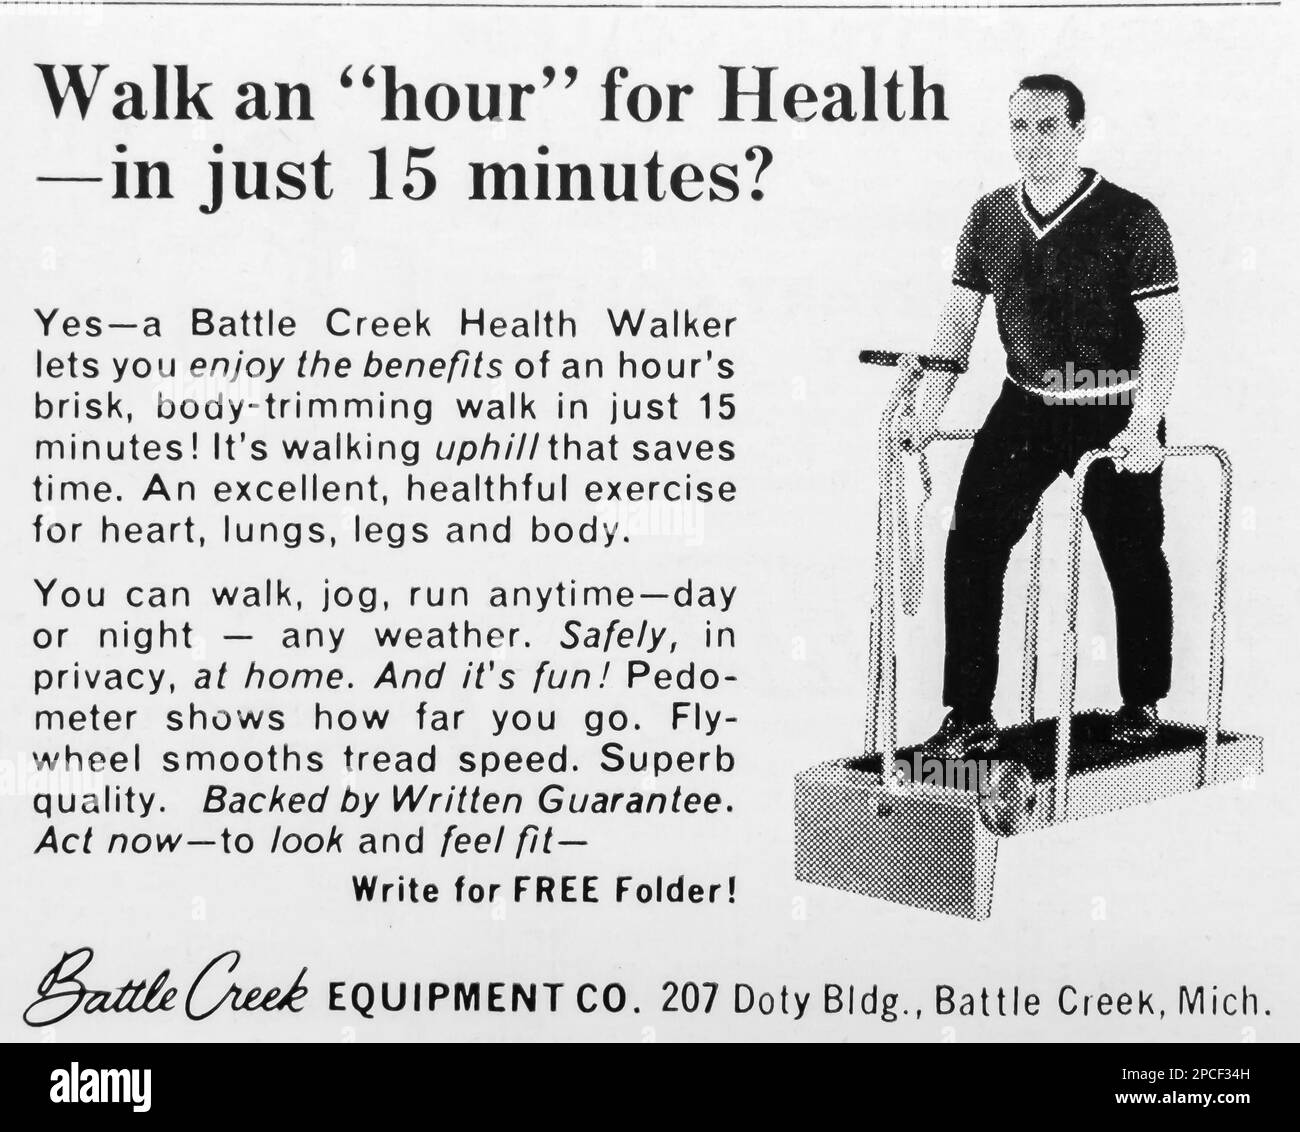 Publicité de Battle Creek Health Walker dans un magazine NatGeo janvier 1968 Banque D'Images